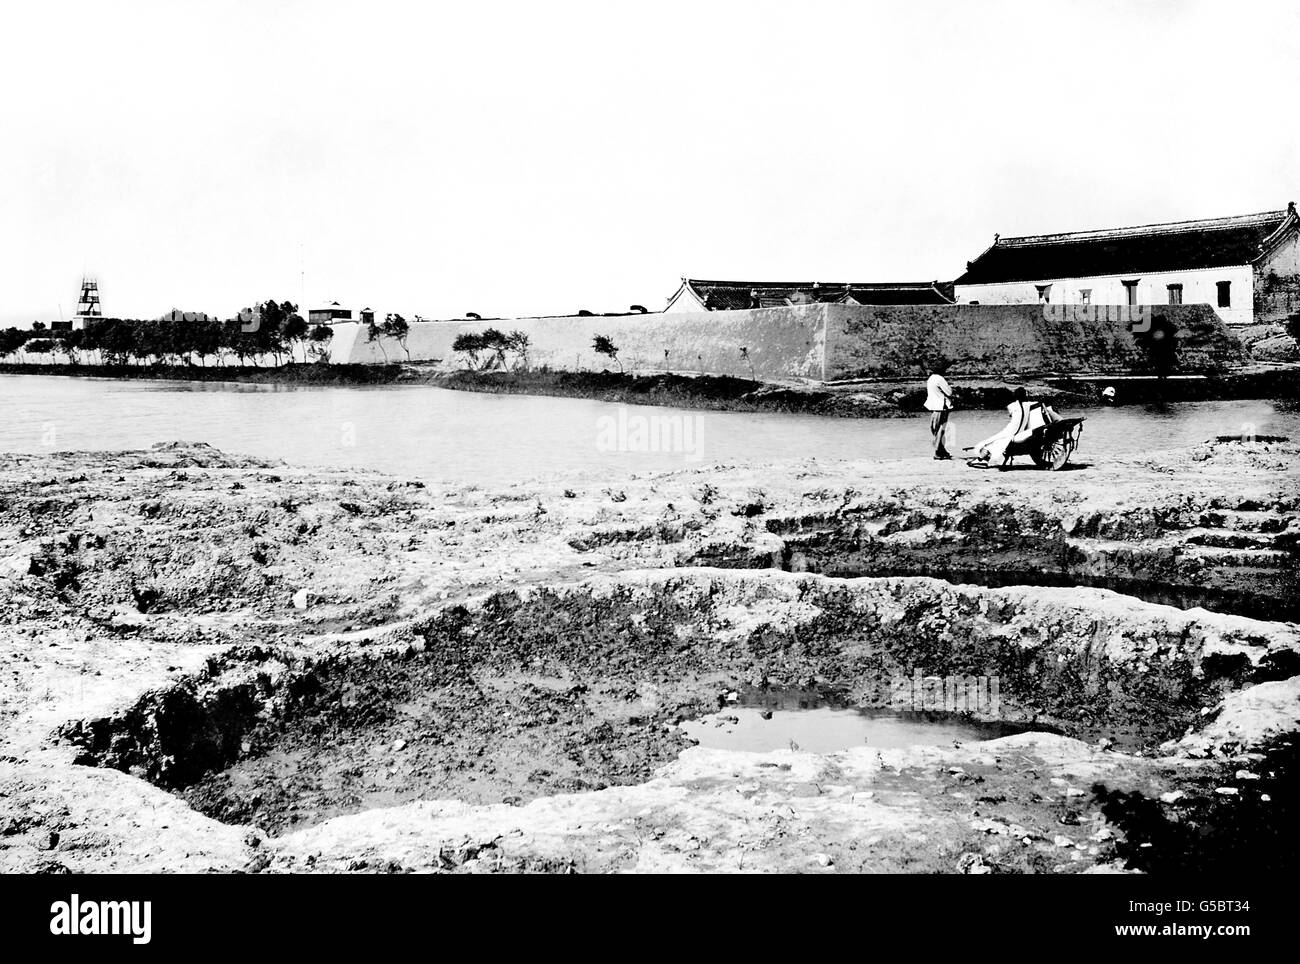 Die Woosung Forts, die von japanischen Landepartys nach einem Engagement zwischen den Forts Gewehren und japanischen Schlachtschiffen gefangen genommen wurden. Stockfoto